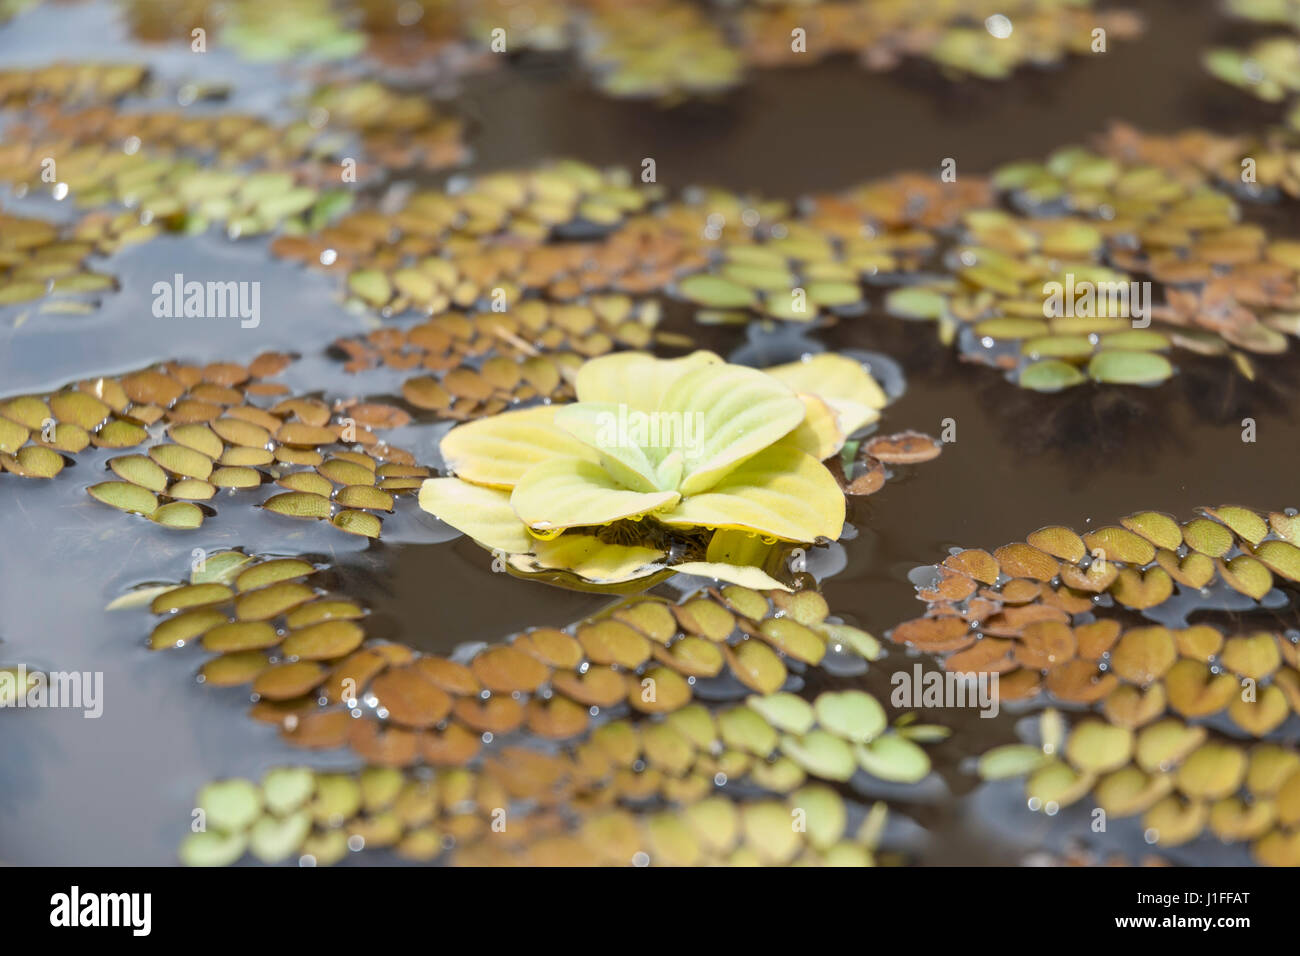 Gelbliches Wasser Salat oder Wasser Kraut (Bahnfahrer Stratiotes) schwimmend in einem Teich Stockfoto